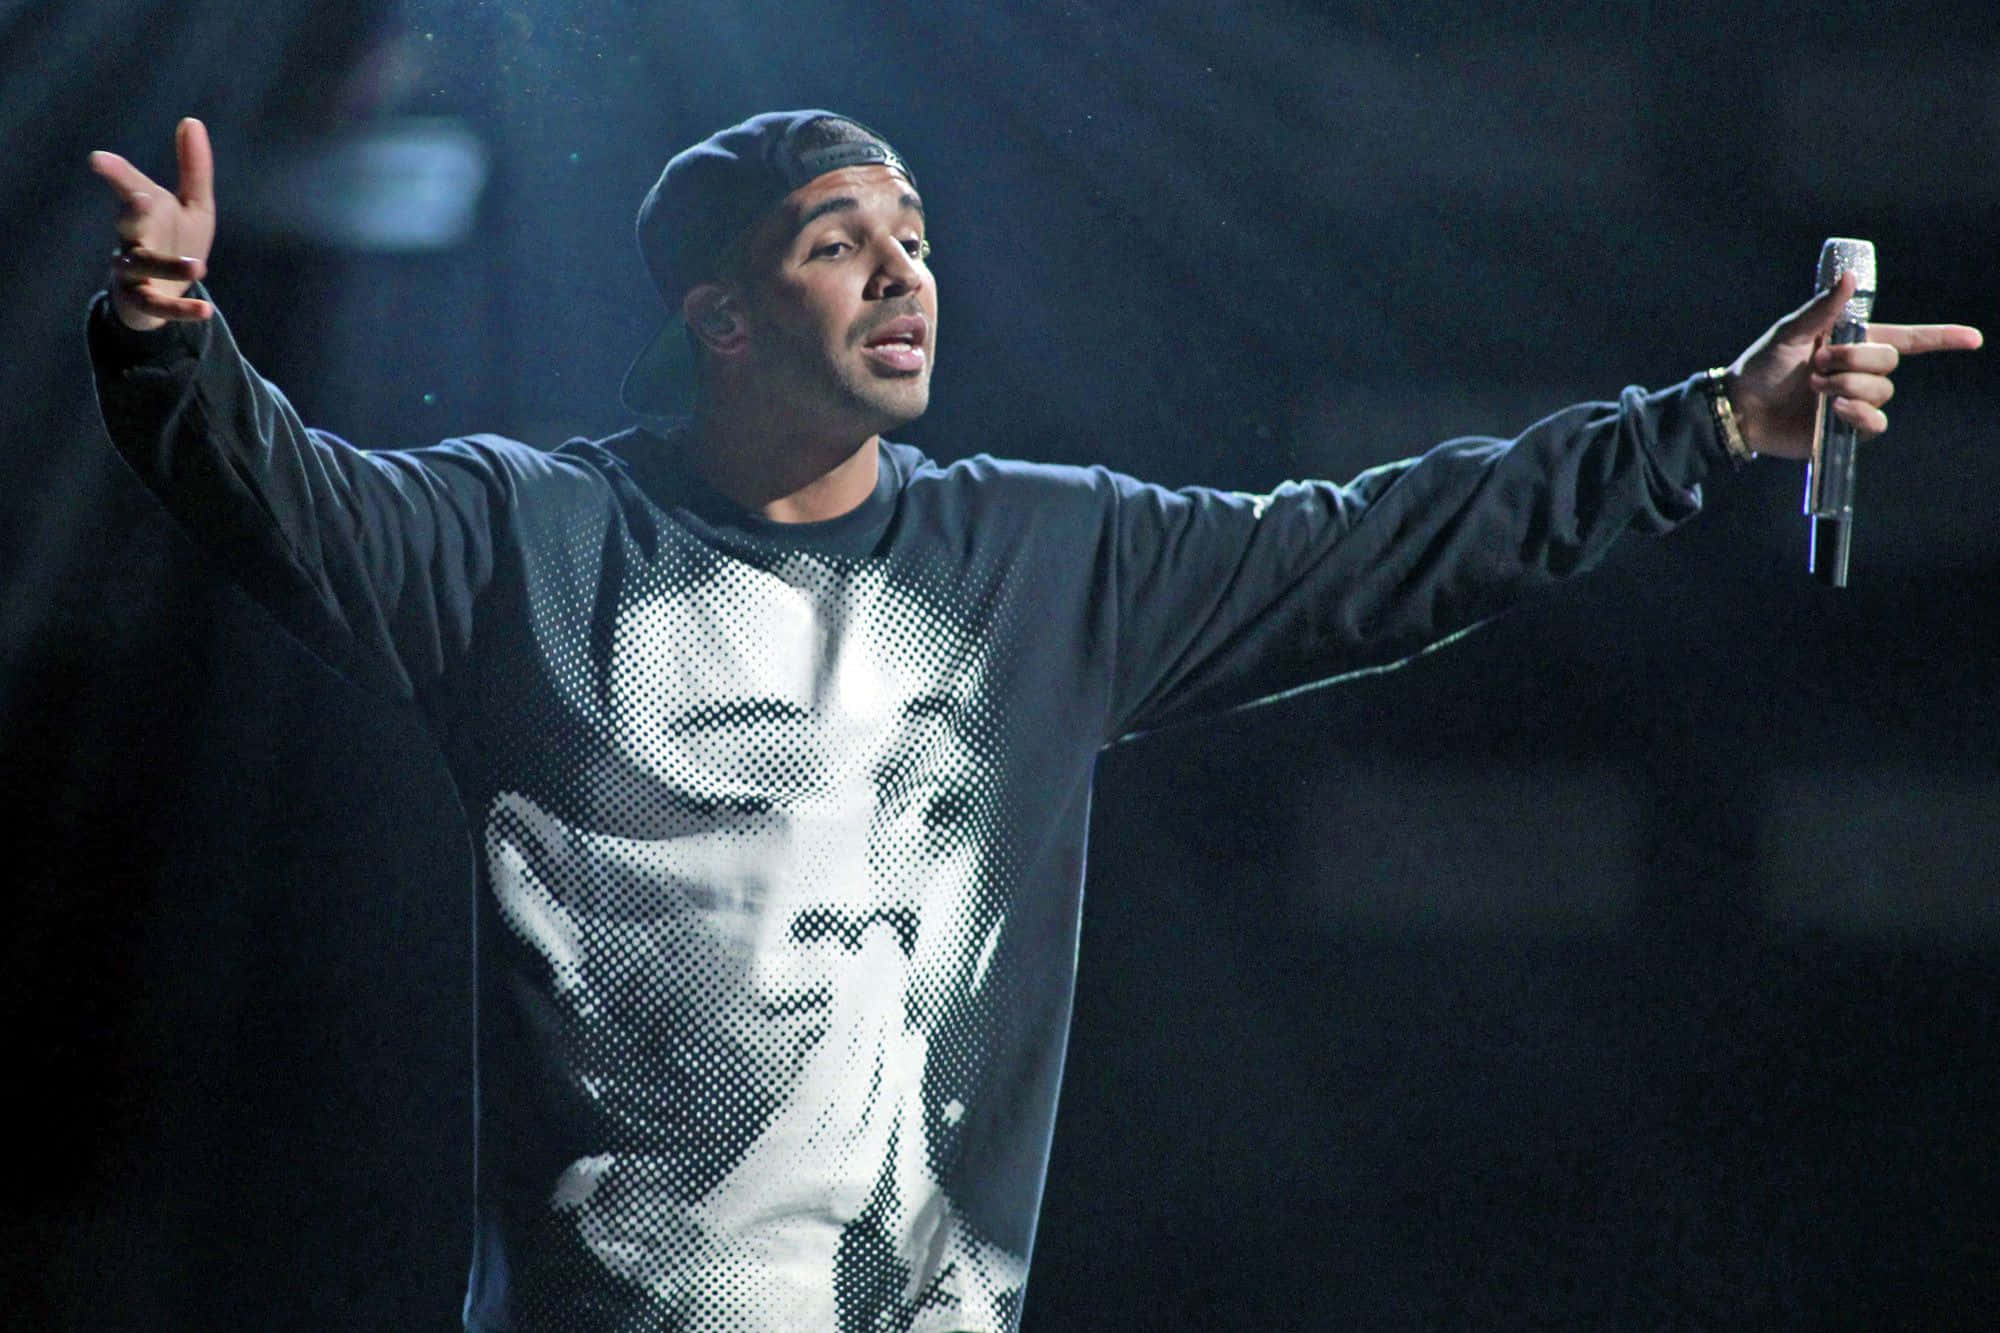 Canadian rapper Drake exuding confidence on stage